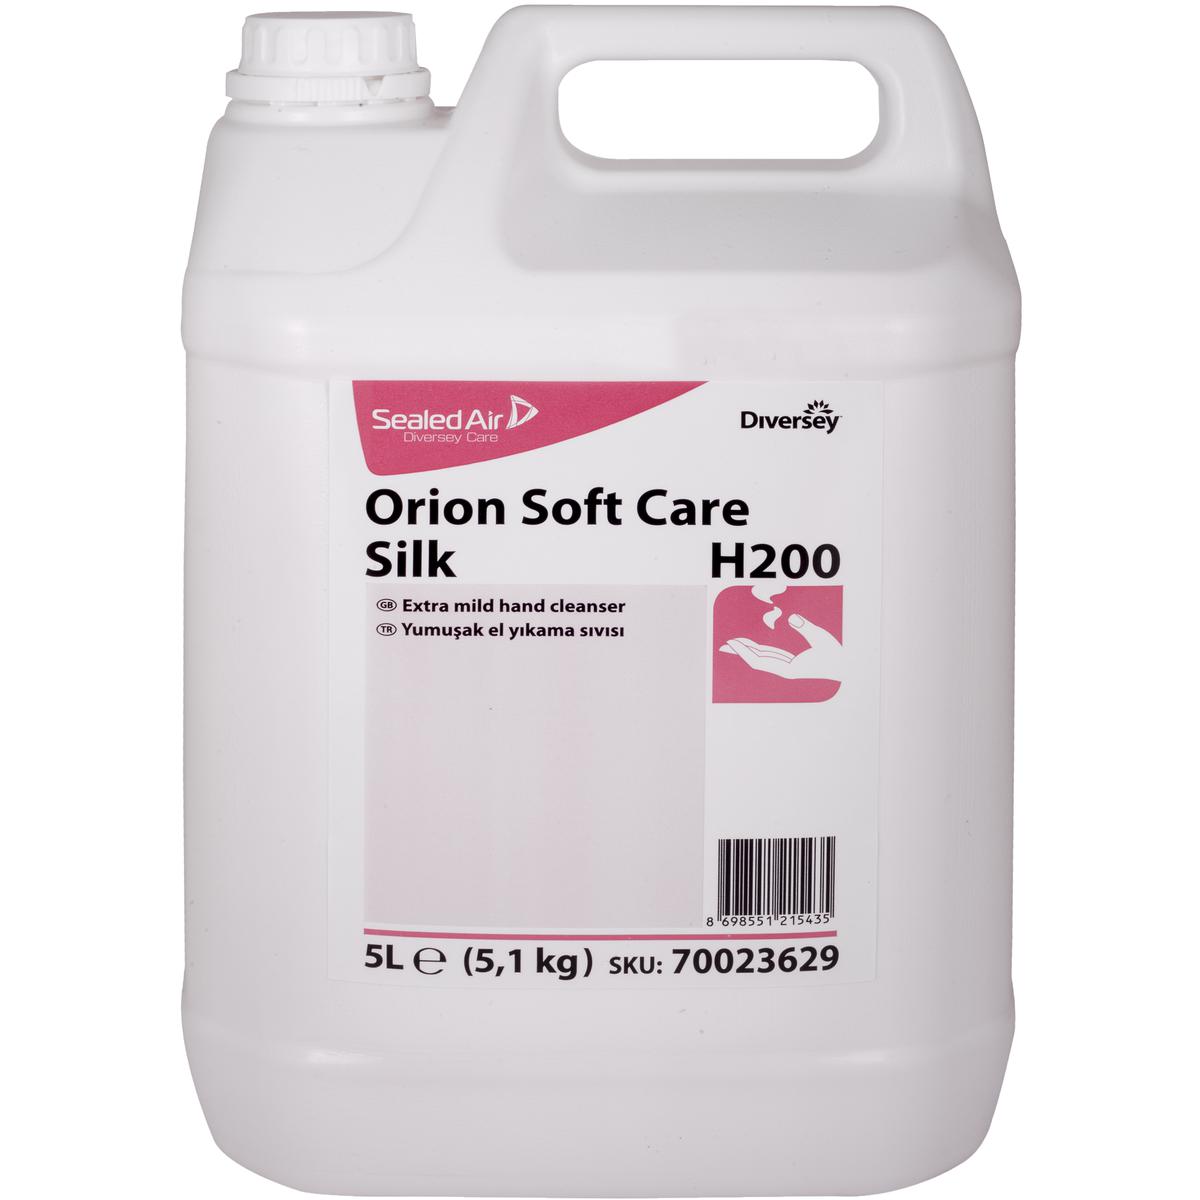 Orion Soft Care Silk H200 5L Hassas Ciltlere Uygun El Yıkama Sıvısı resmi